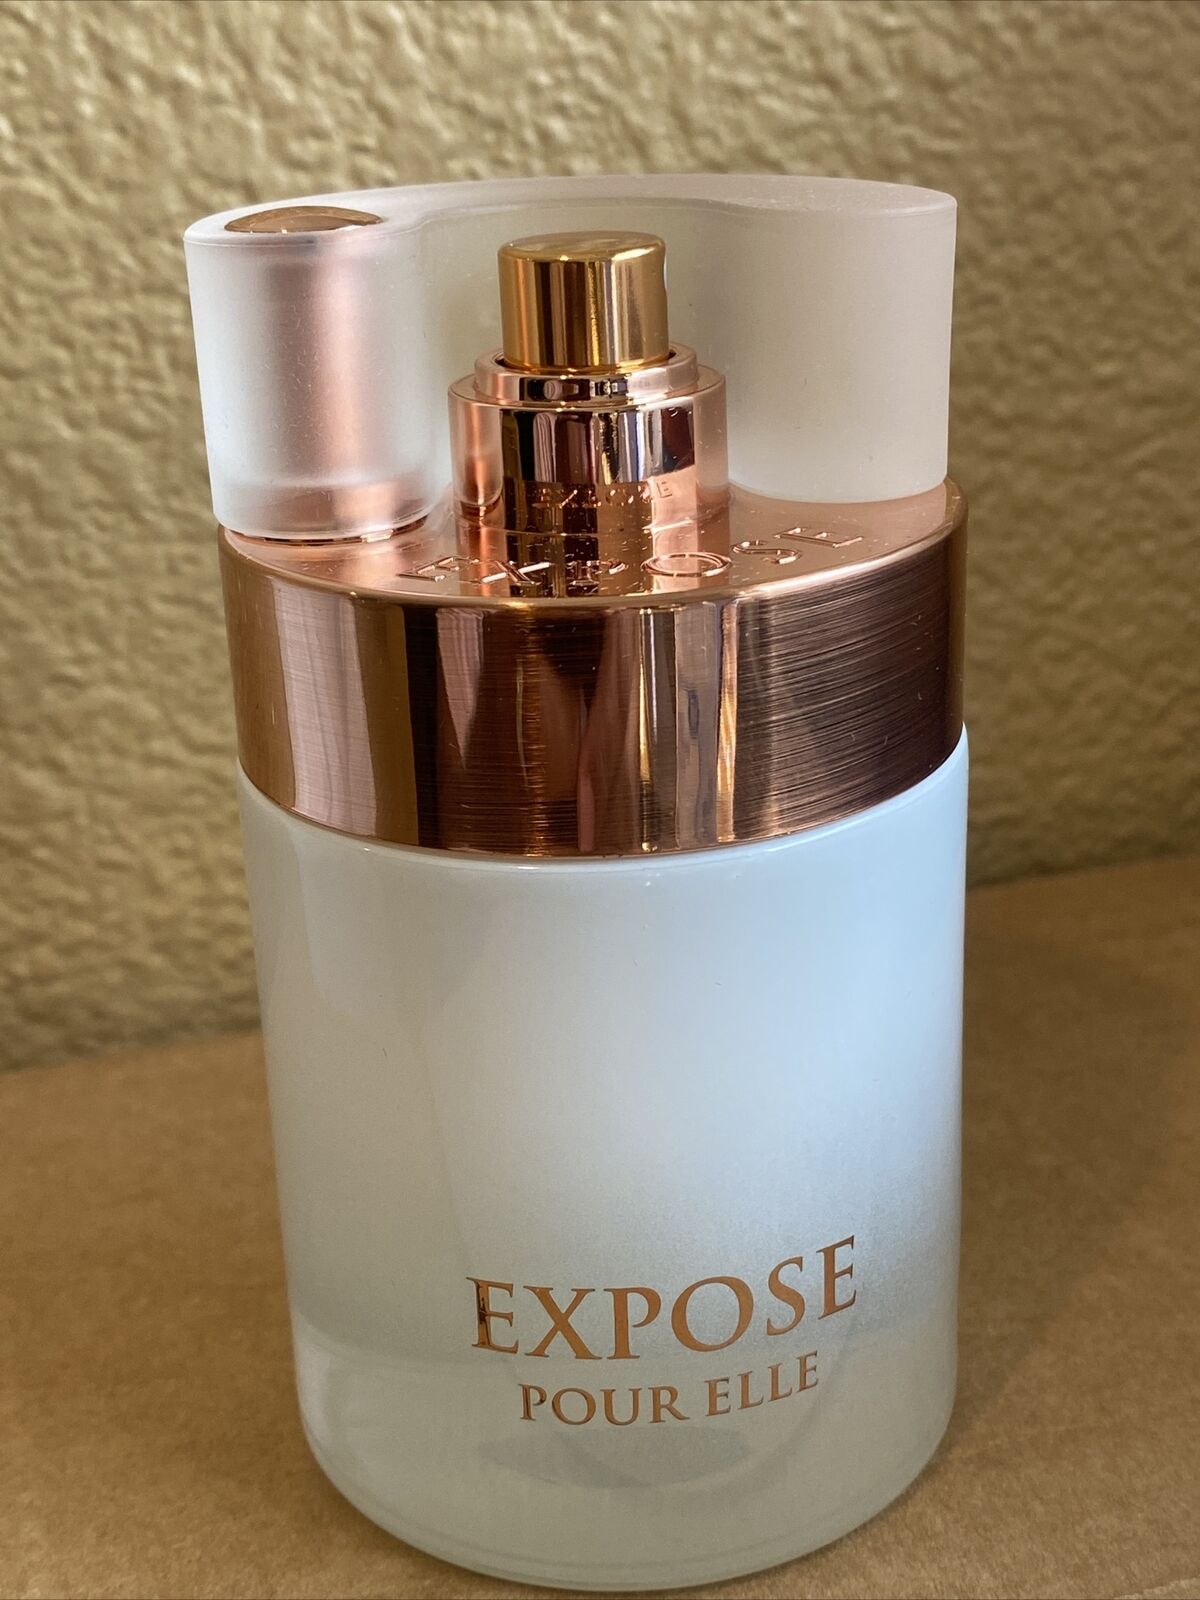 EXPOSE POUR ELLE 100ML 3.4.OZ EAU DE PARFUM SPRAY BY Fragrance World.